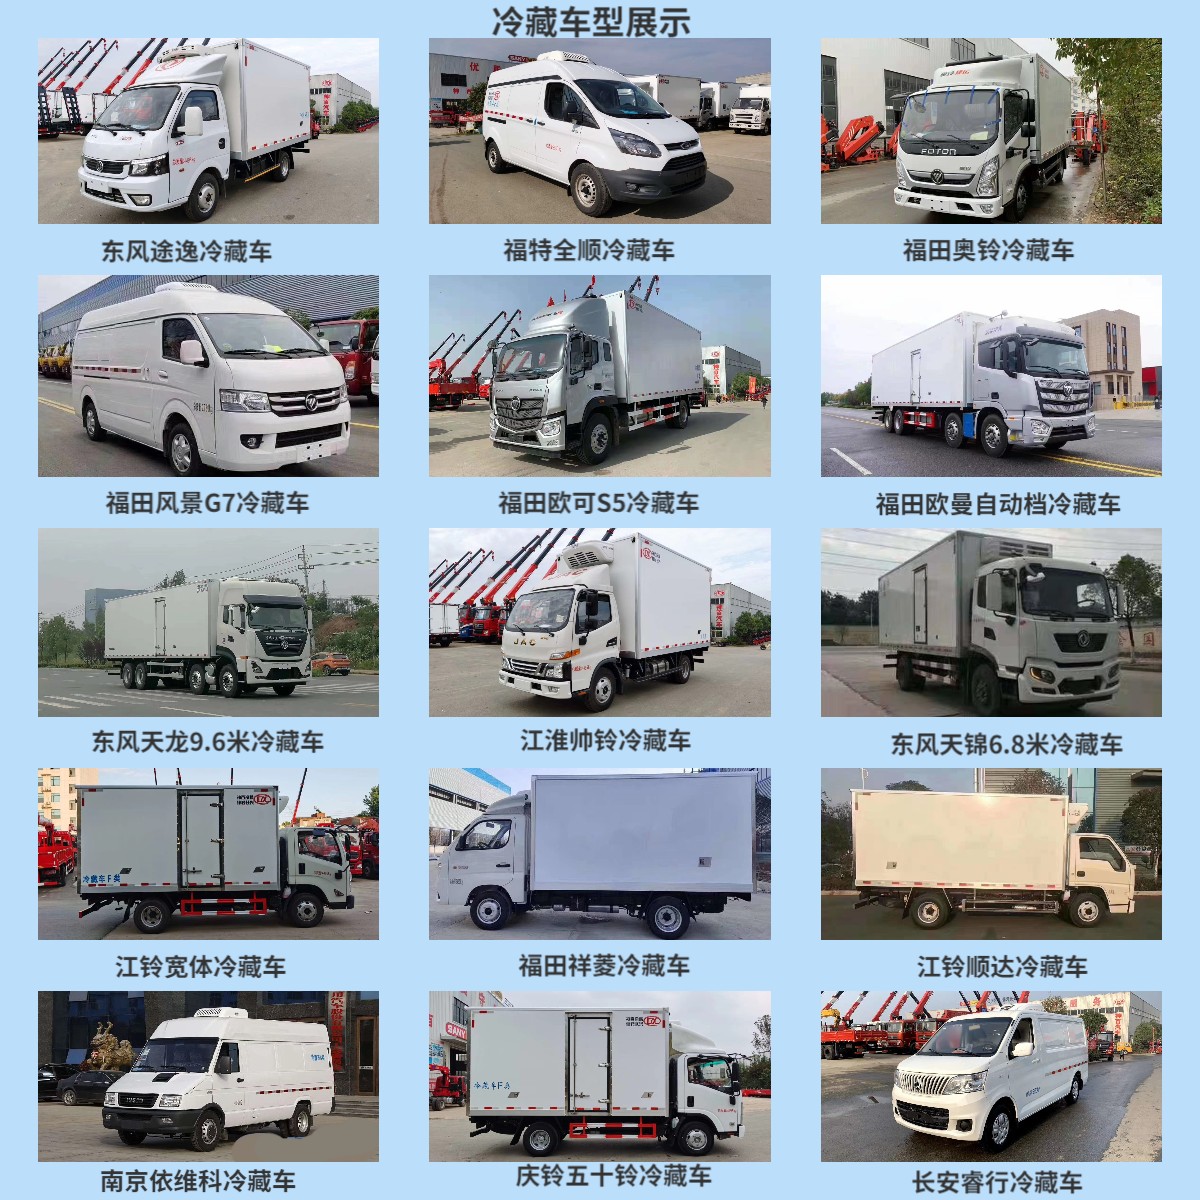 生产厂家供应 福田风景G7轻卡面包冷藏车